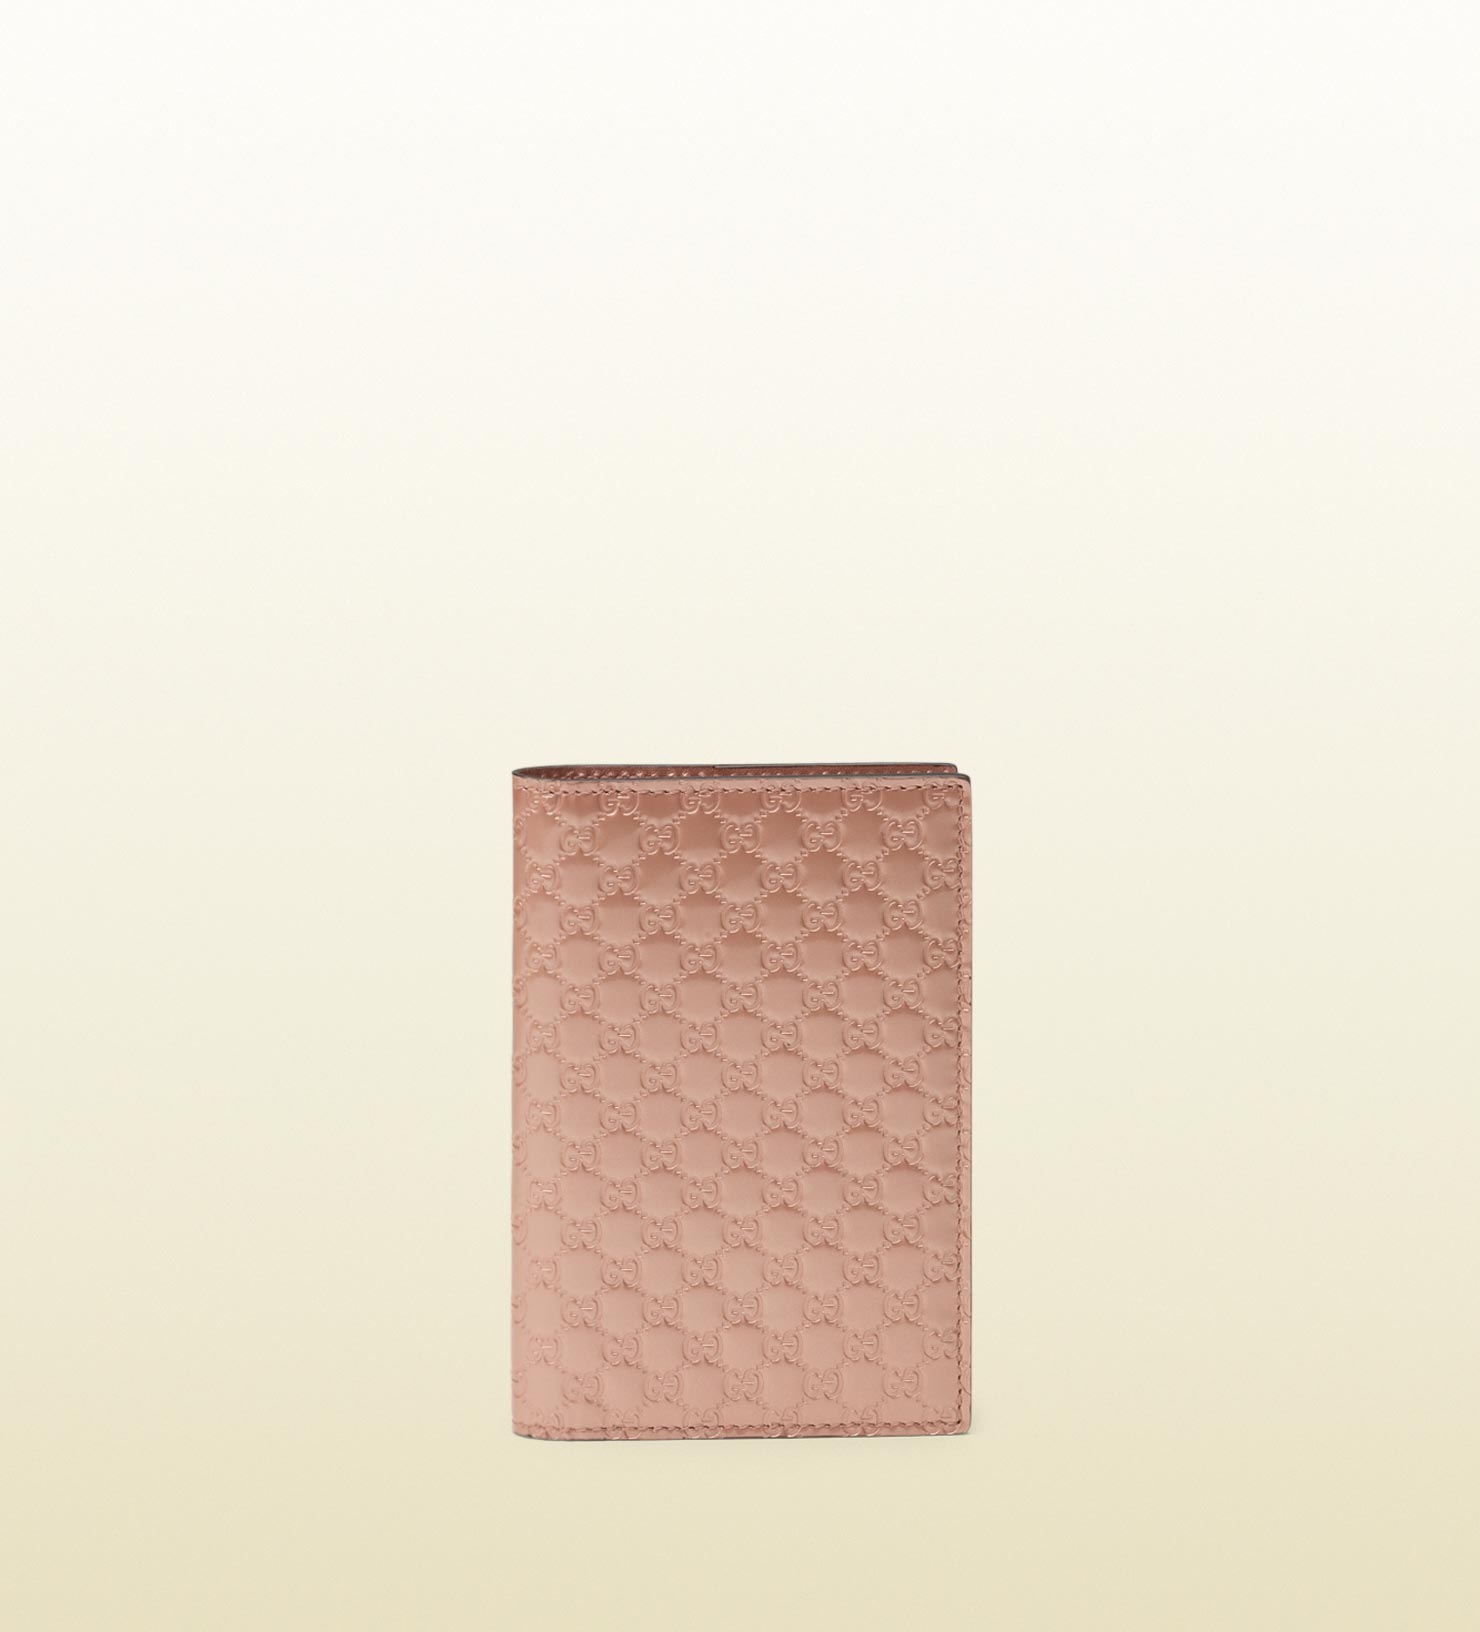 Gucci Passport Holder - Brown Travel, Accessories - 0GU20471